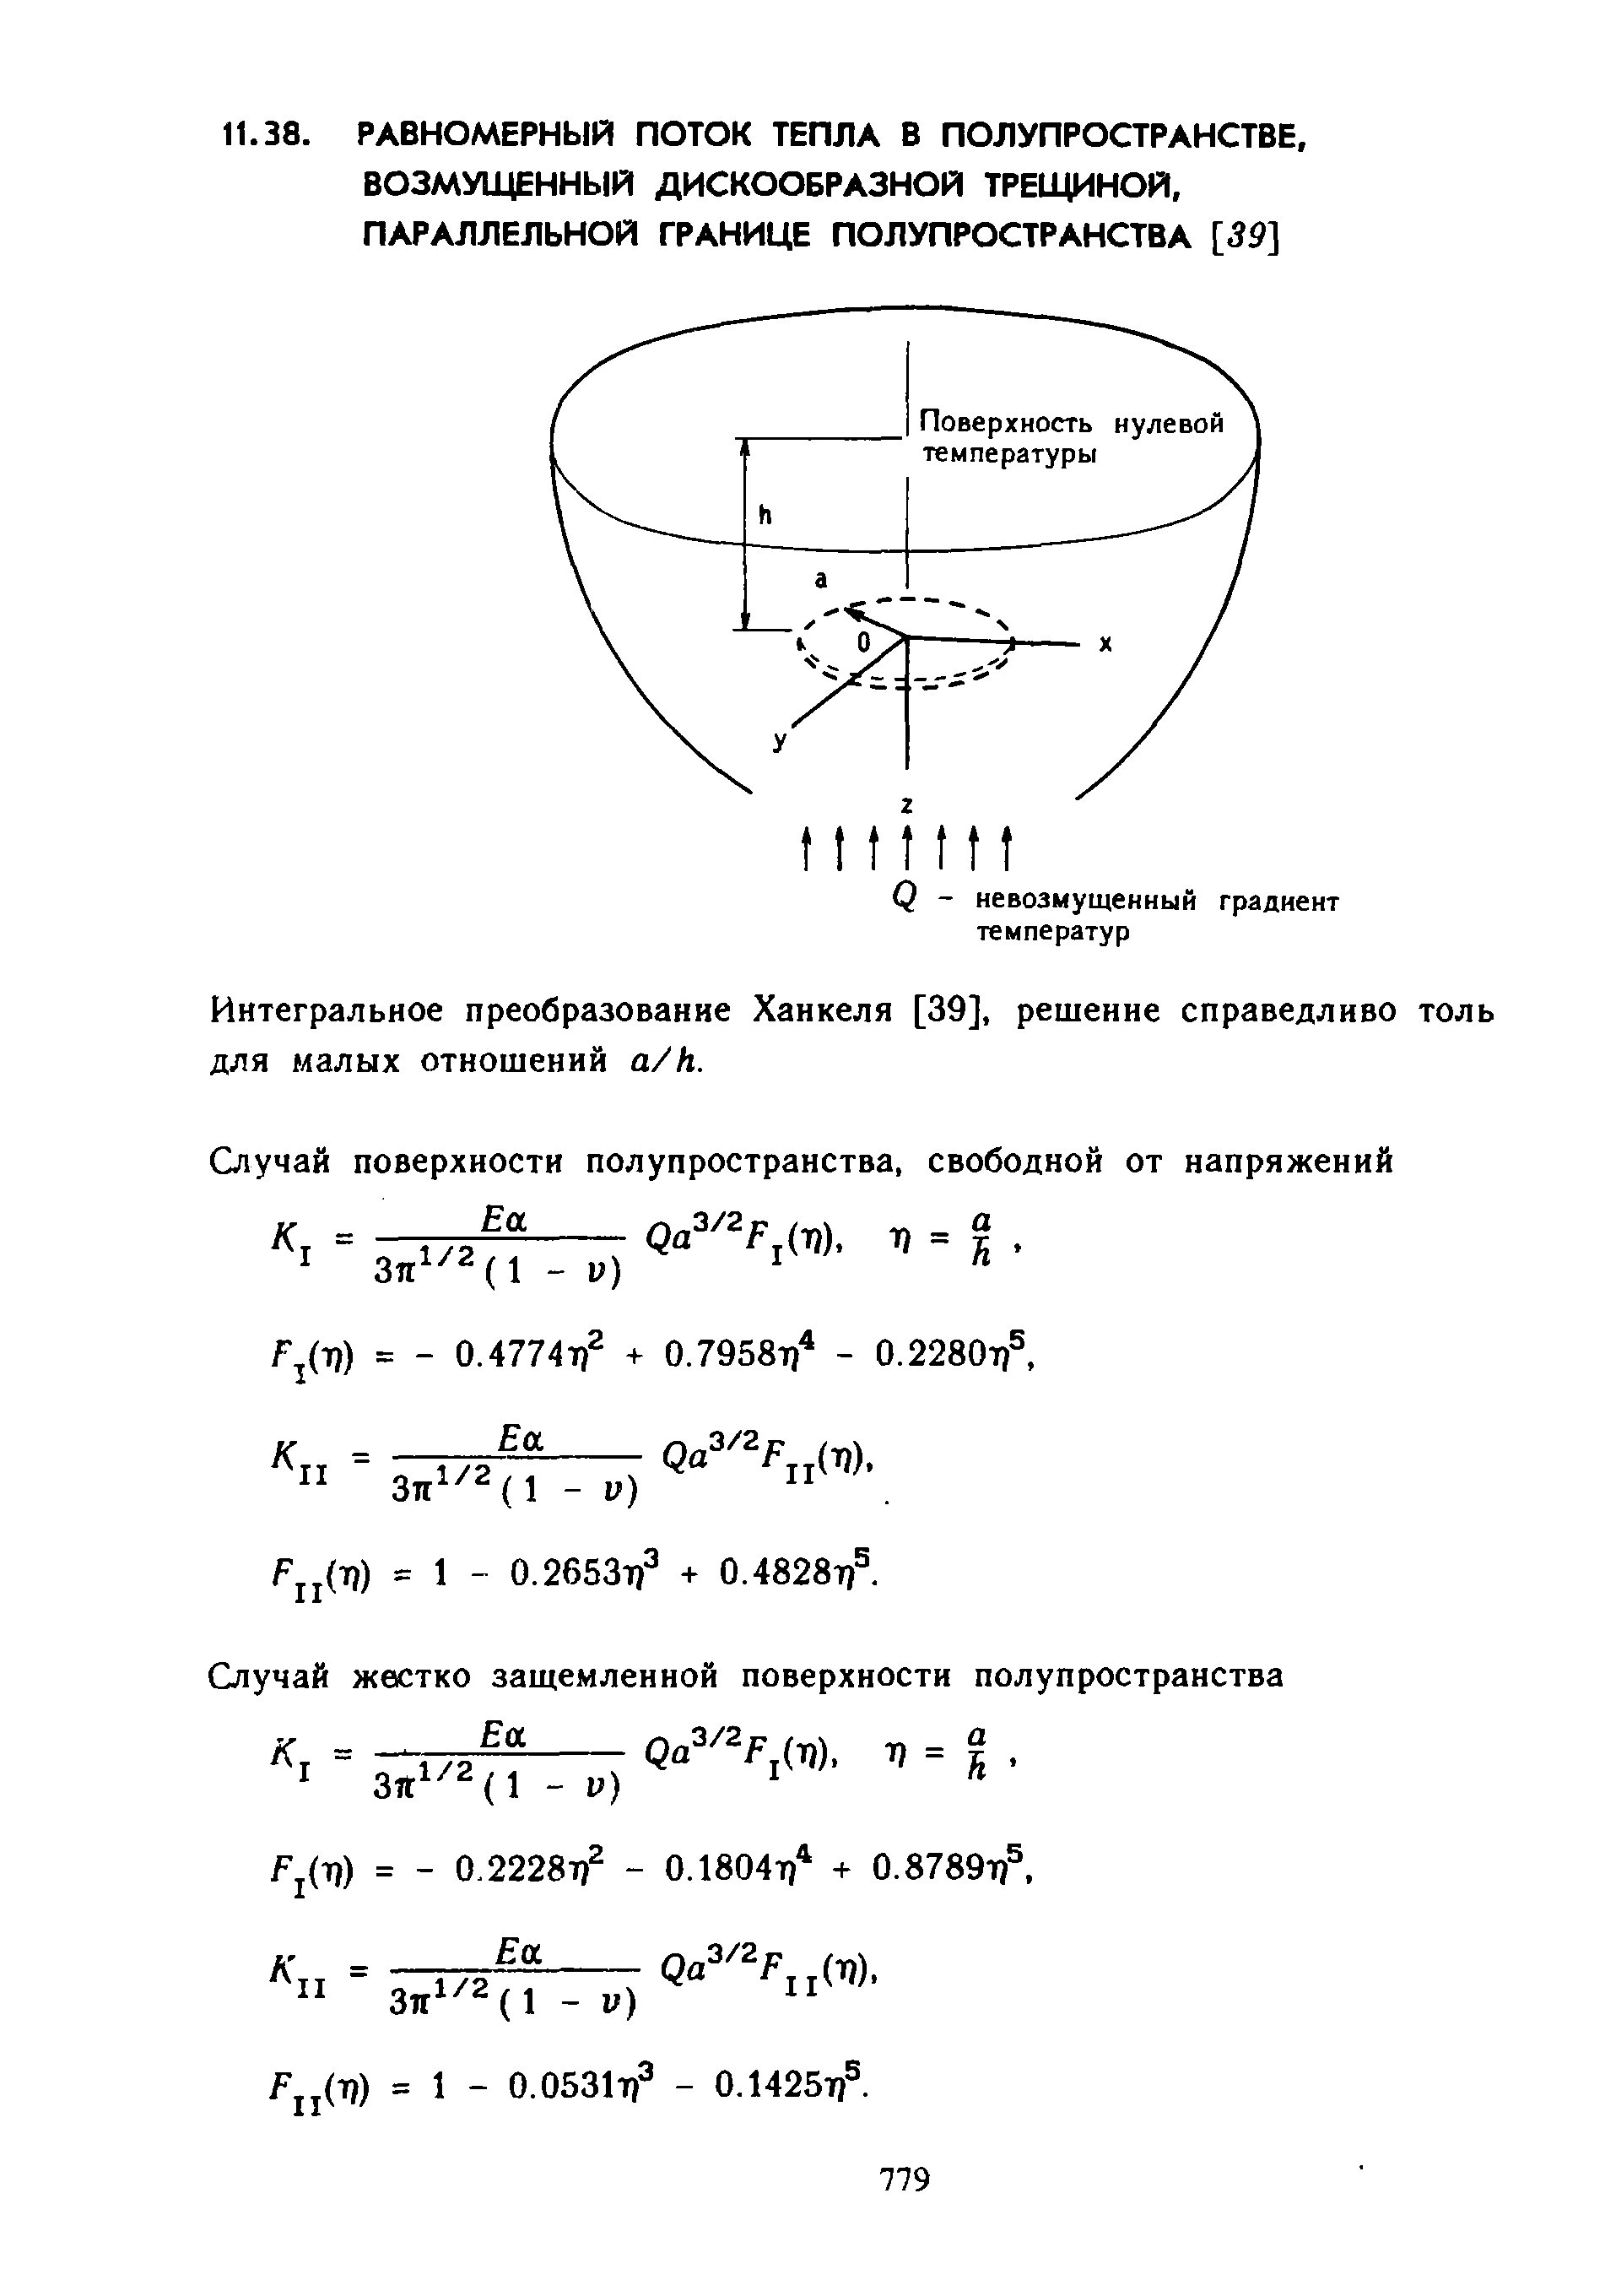 Интегральное преобразование Ханкеля [39], решение справедливо толь для малых отношений a/h.
